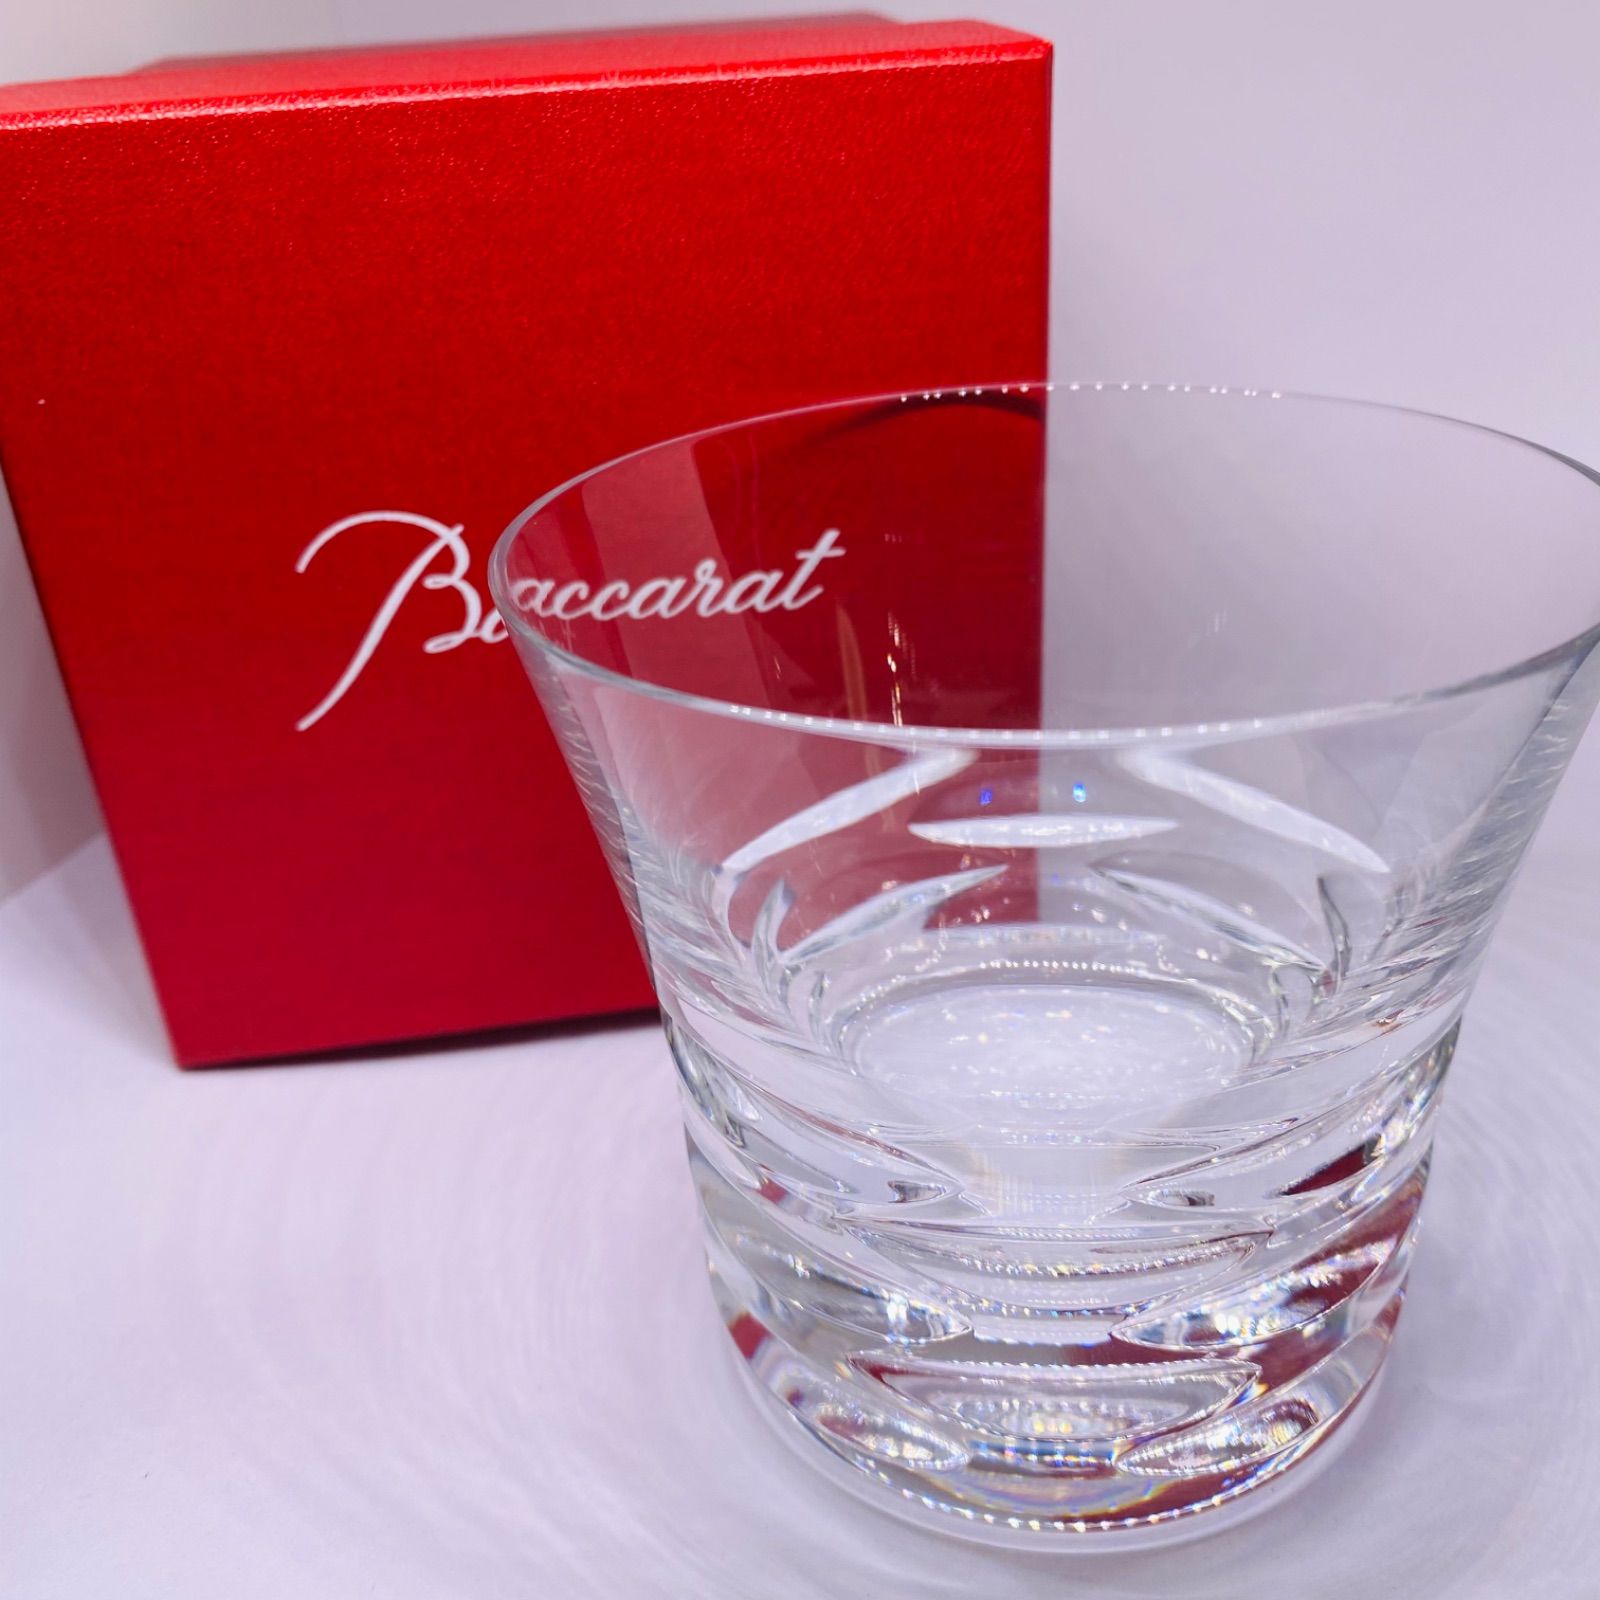 Baccarat バカラ ローラ クリスタルガラス ロックグラス 新品未使用ロックグラスシリーズ名